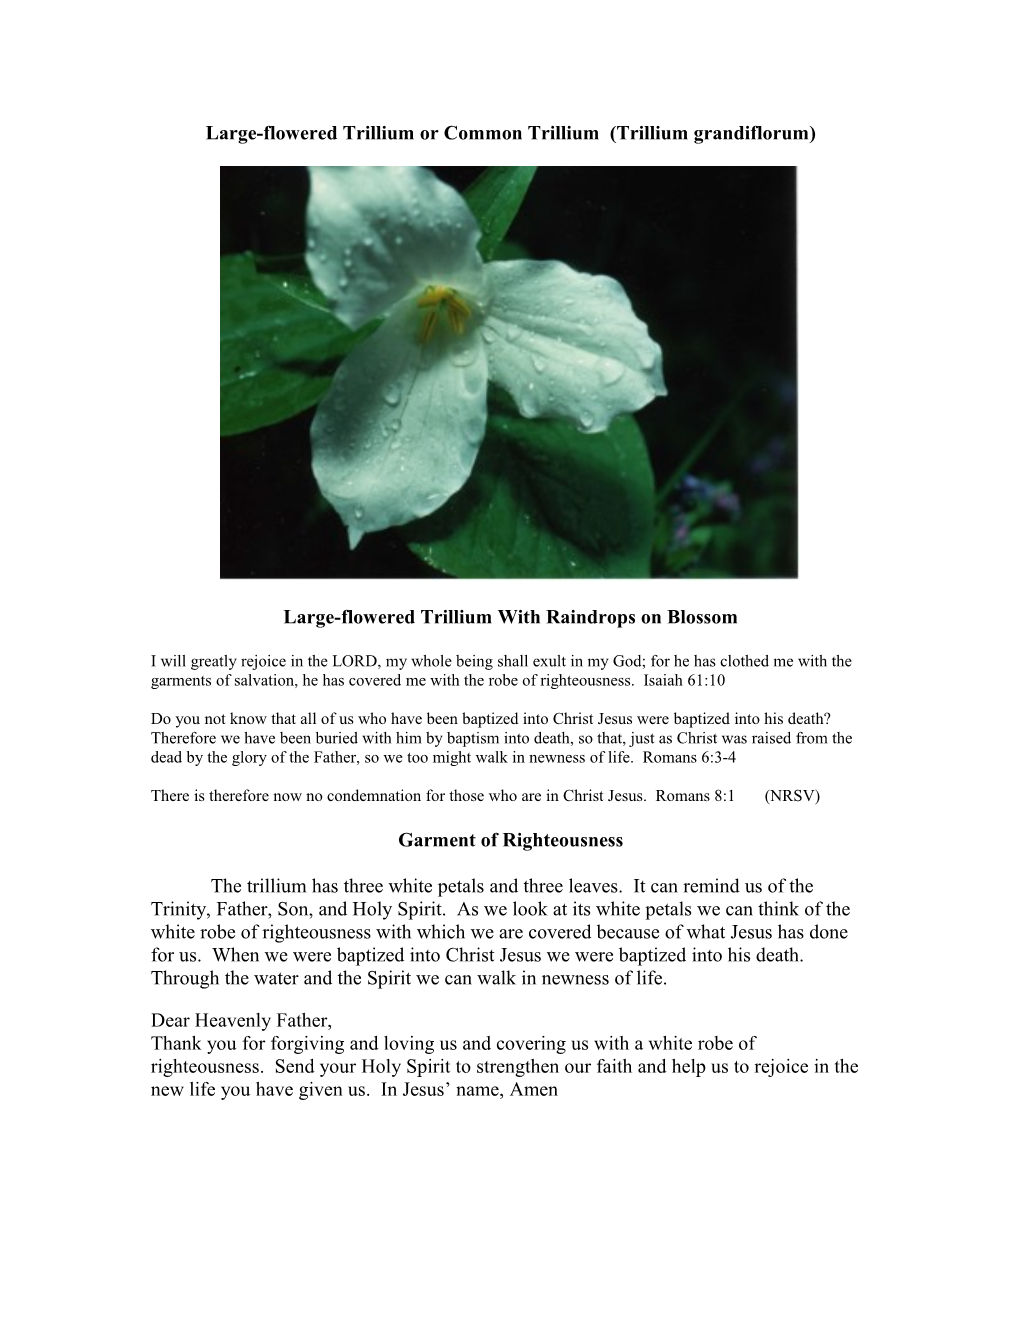 Large-Flowered Trillium Or Common Trillium (Trillium Grandiflorum)